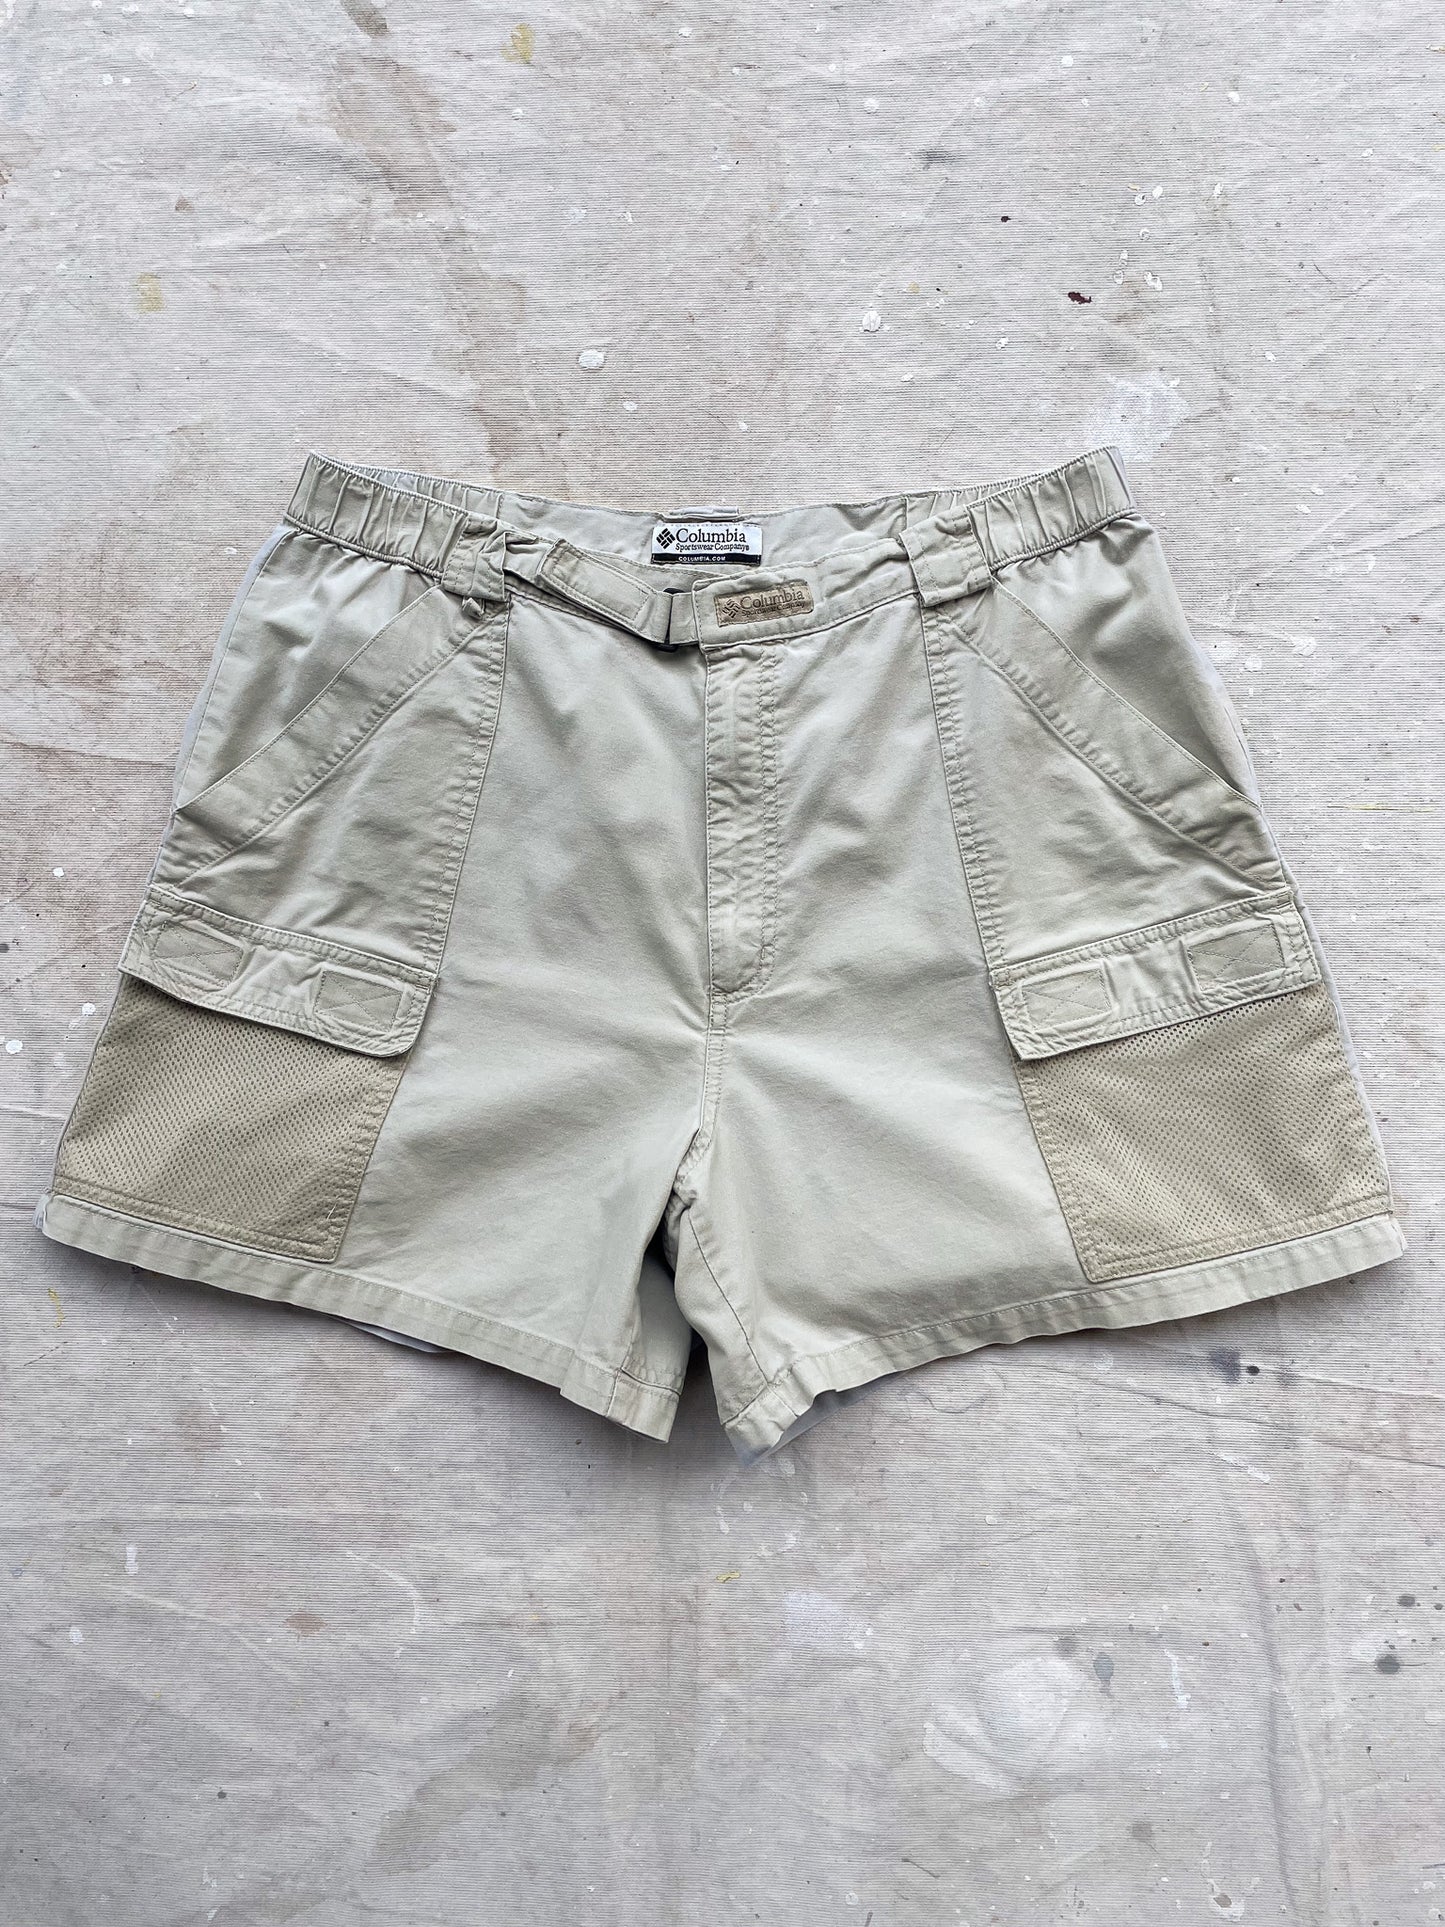 Columbia Cargo Mesh Safari Shorts—[35]